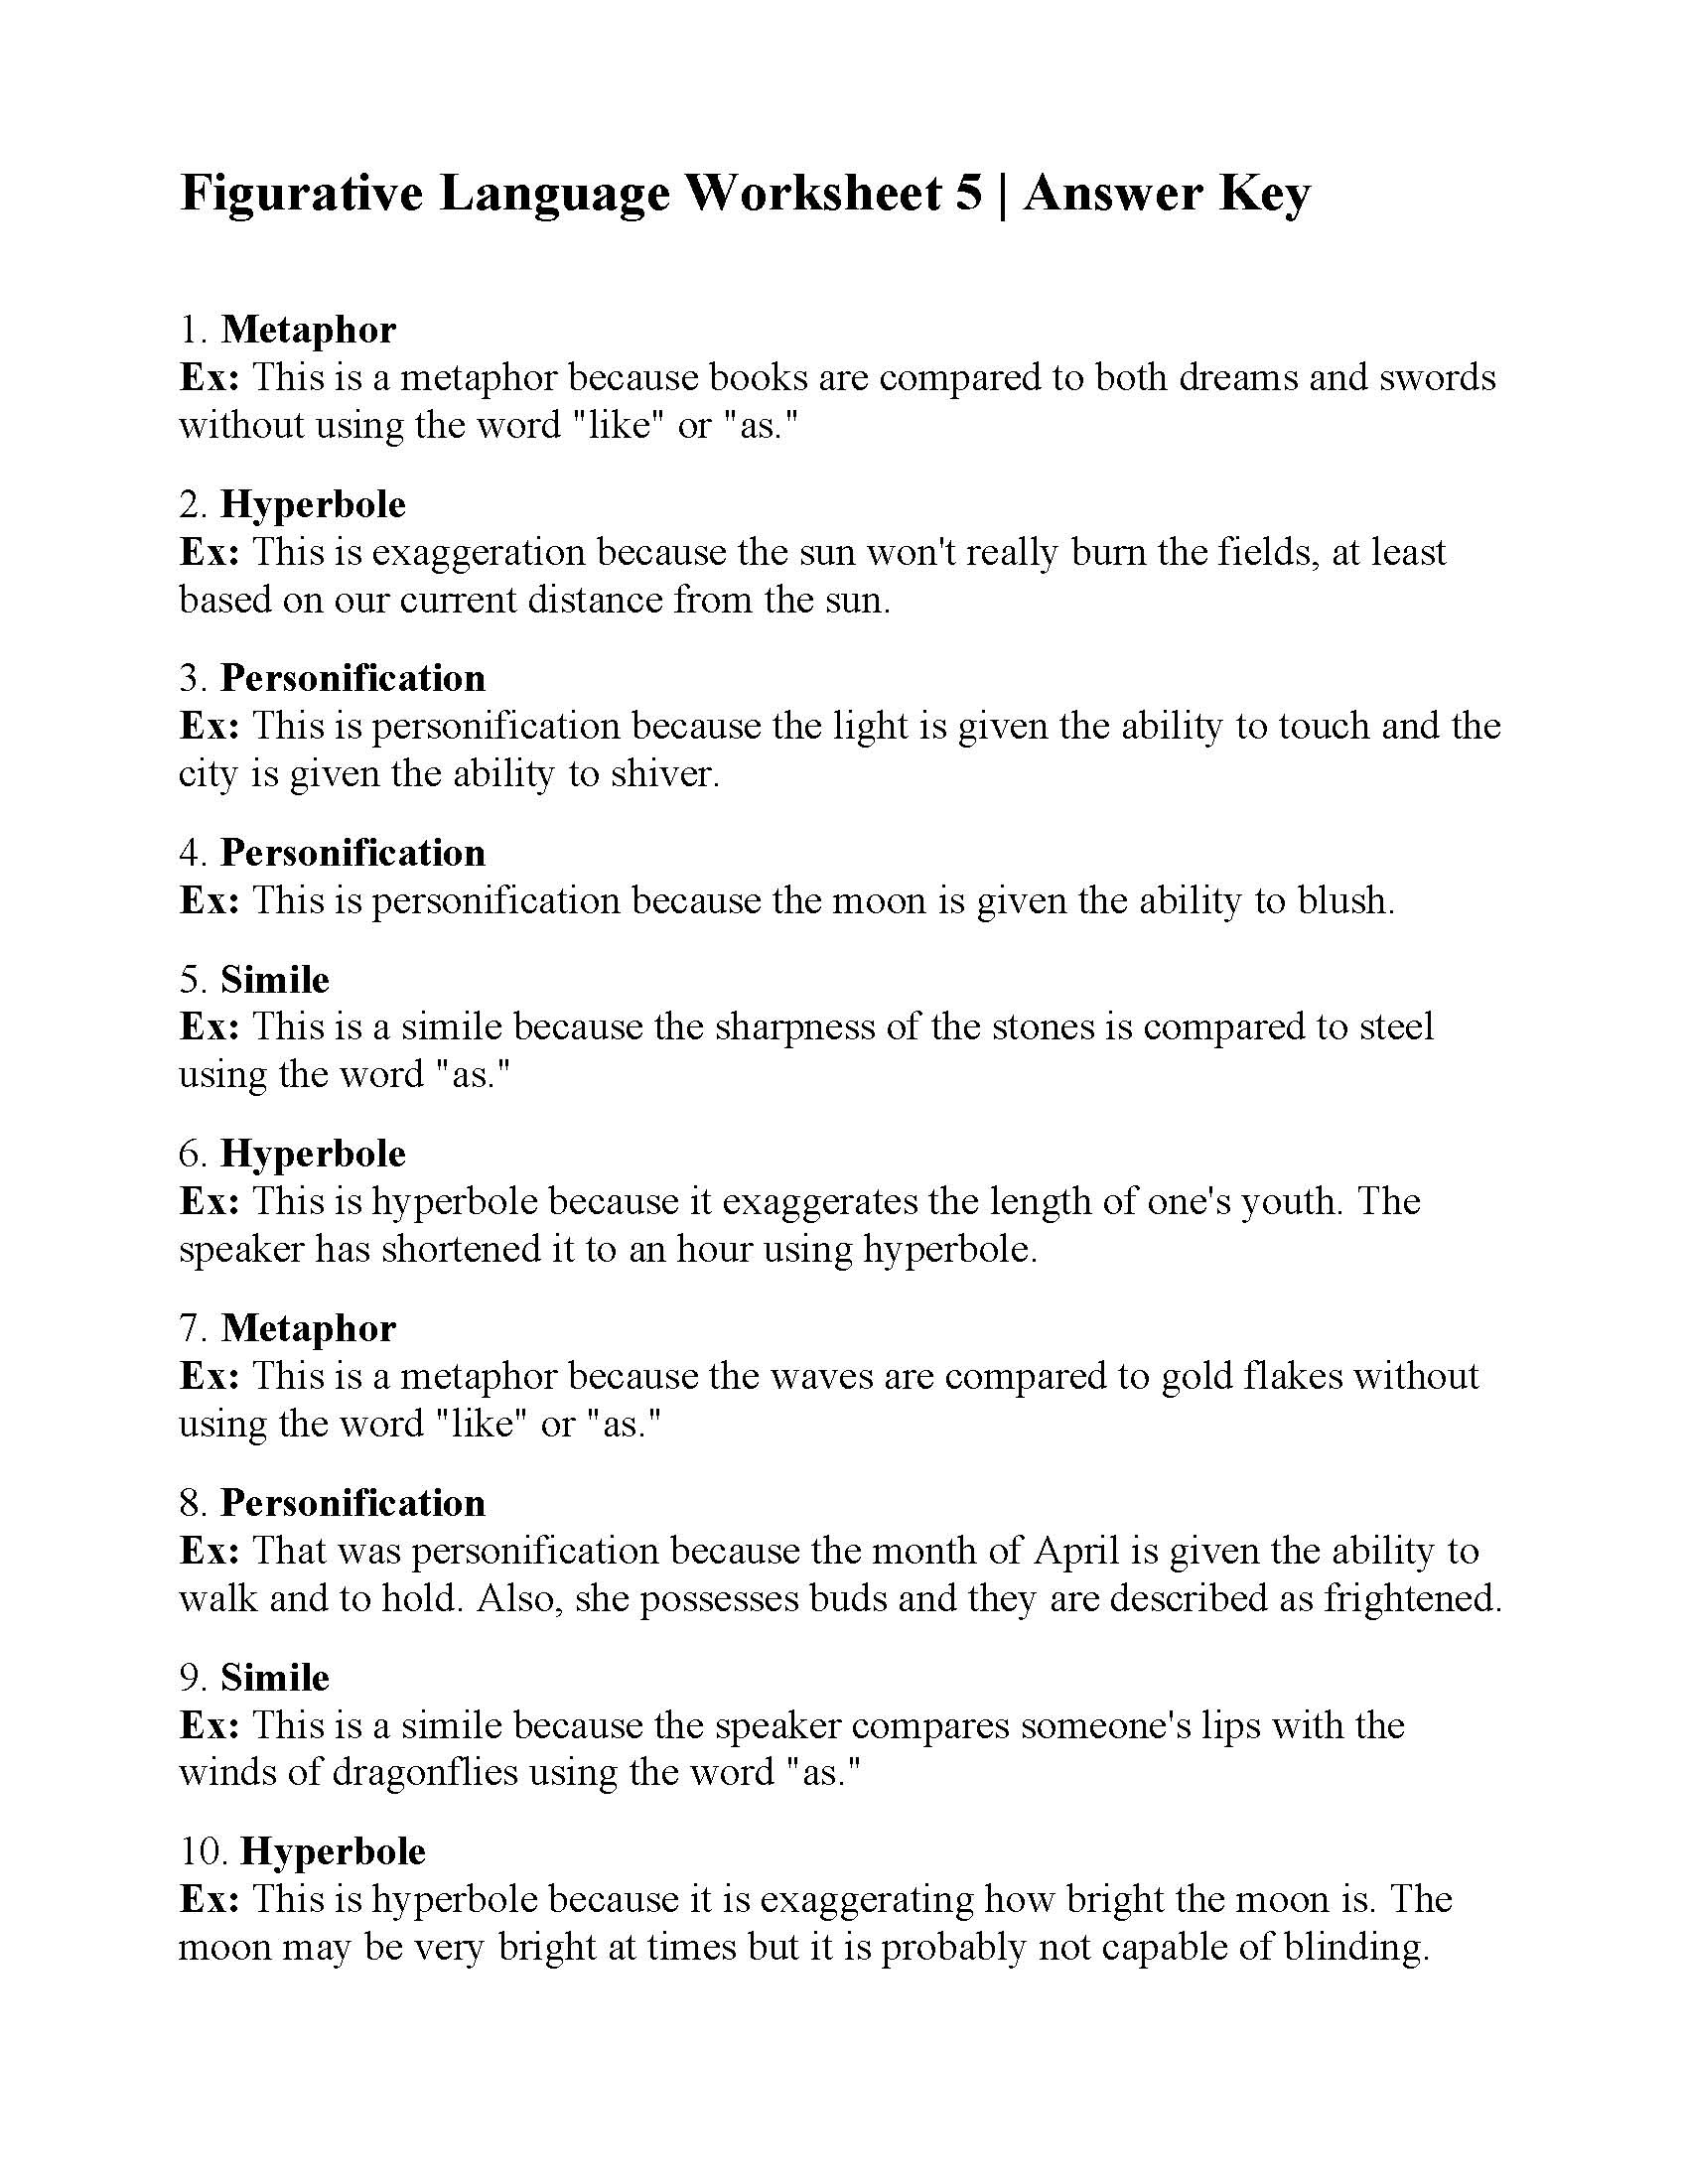 Figurative Language Worksheet 5 Answers